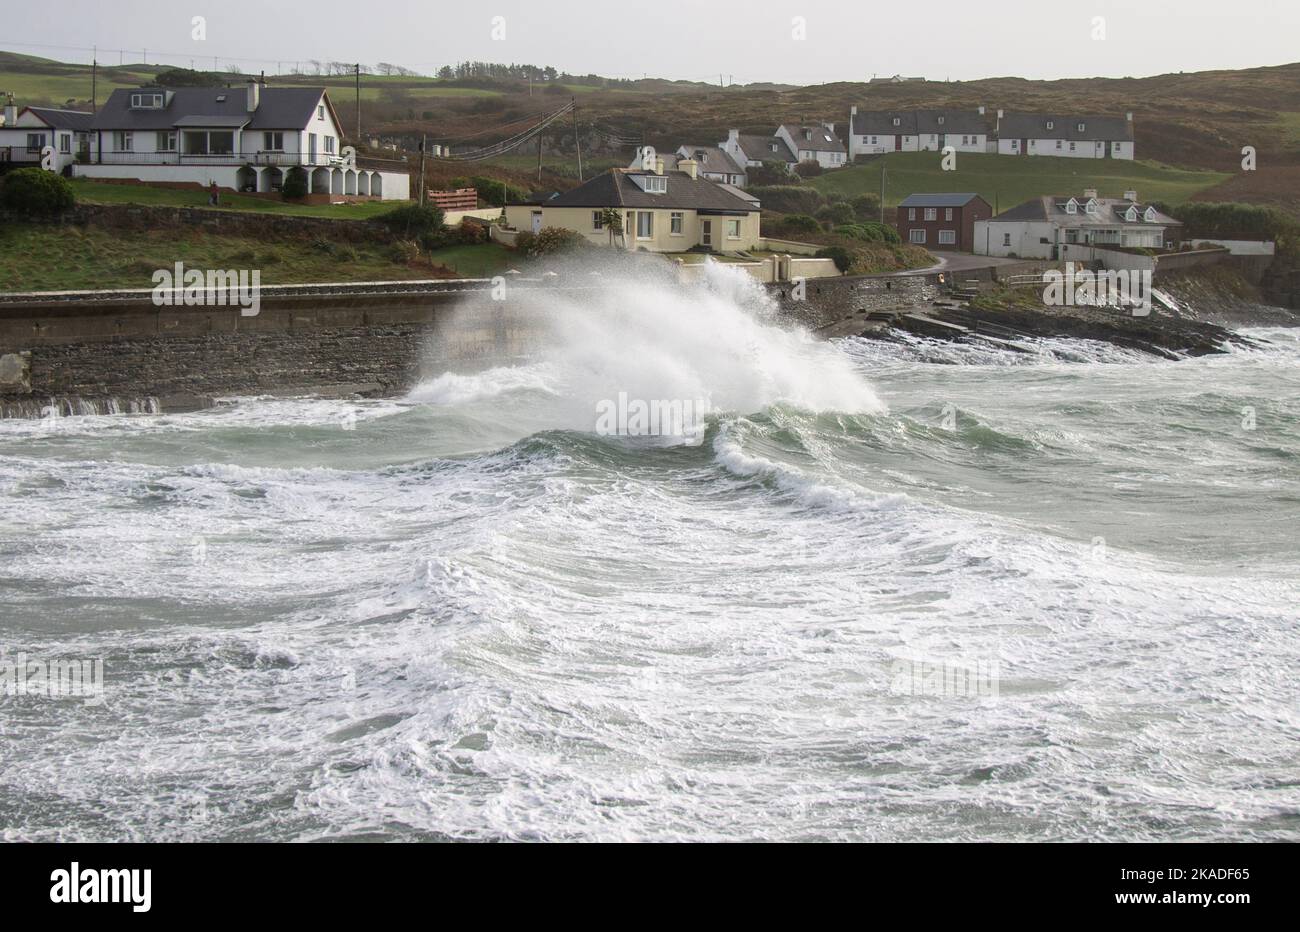 Ondes de tempête se brisant au-dessus des défenses de la mer. Tragumna, West Cork, Irlande Banque D'Images